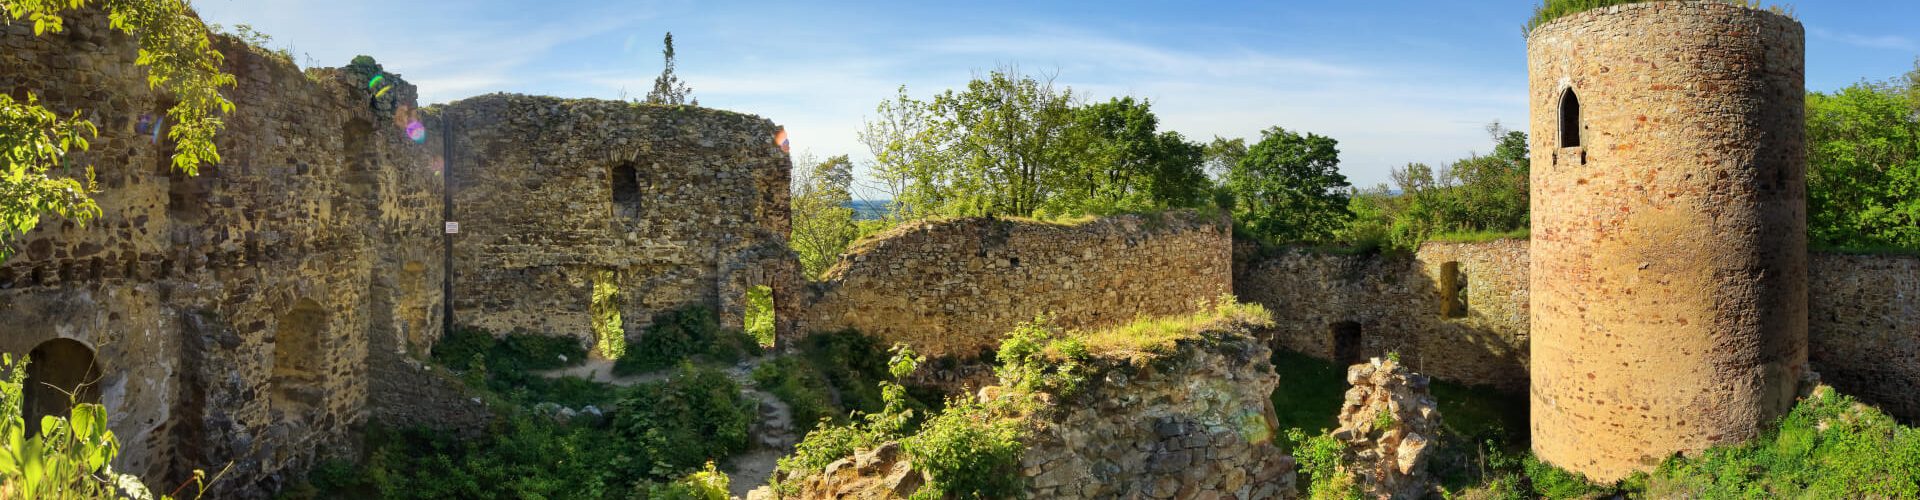 Bergfrit, zbytky paláce a bývalé nádvoří hradu Valdek na podzim